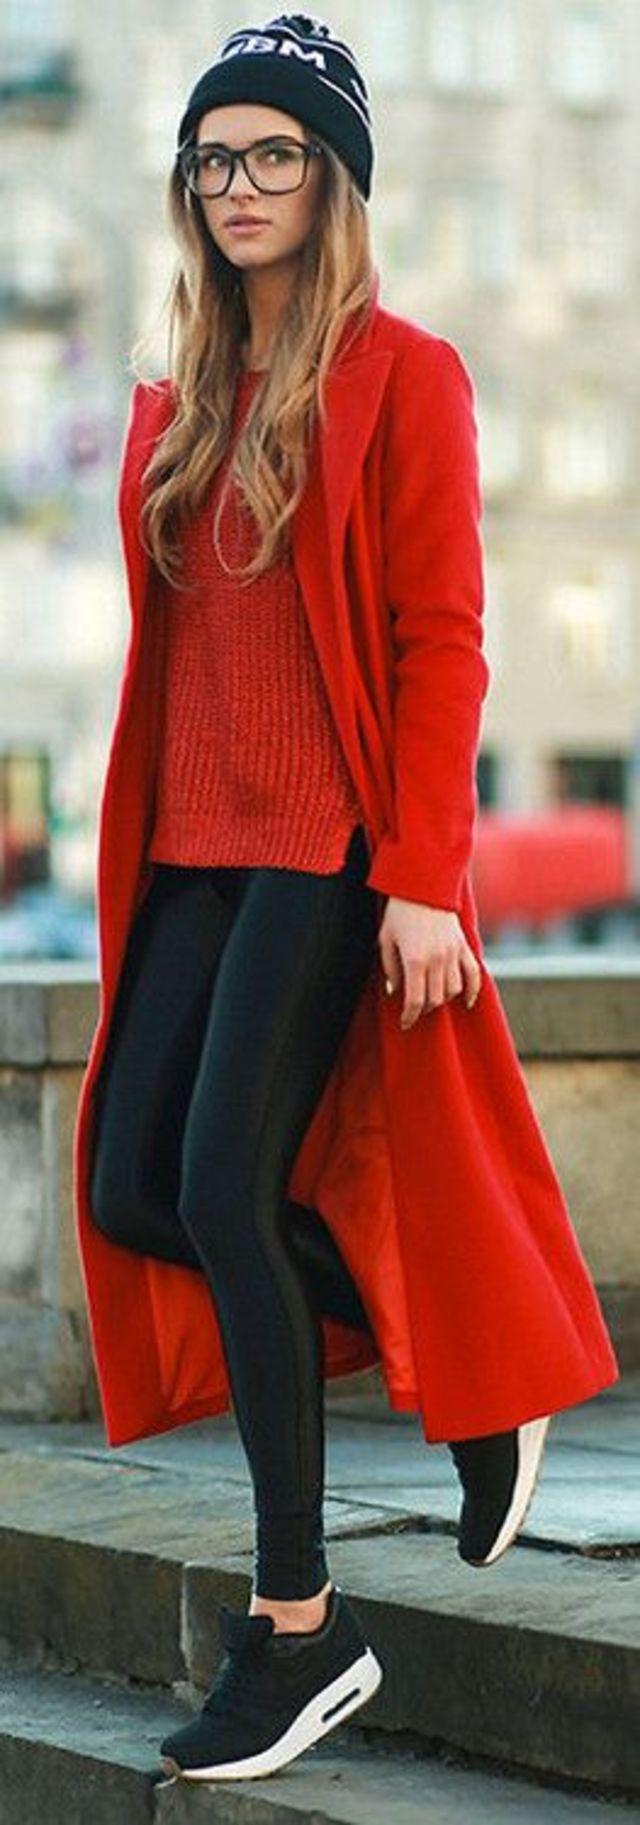 נעלי ספורט שחורות + סקיני עור + סוודר אדום + מעיל אדום + כובע שחור